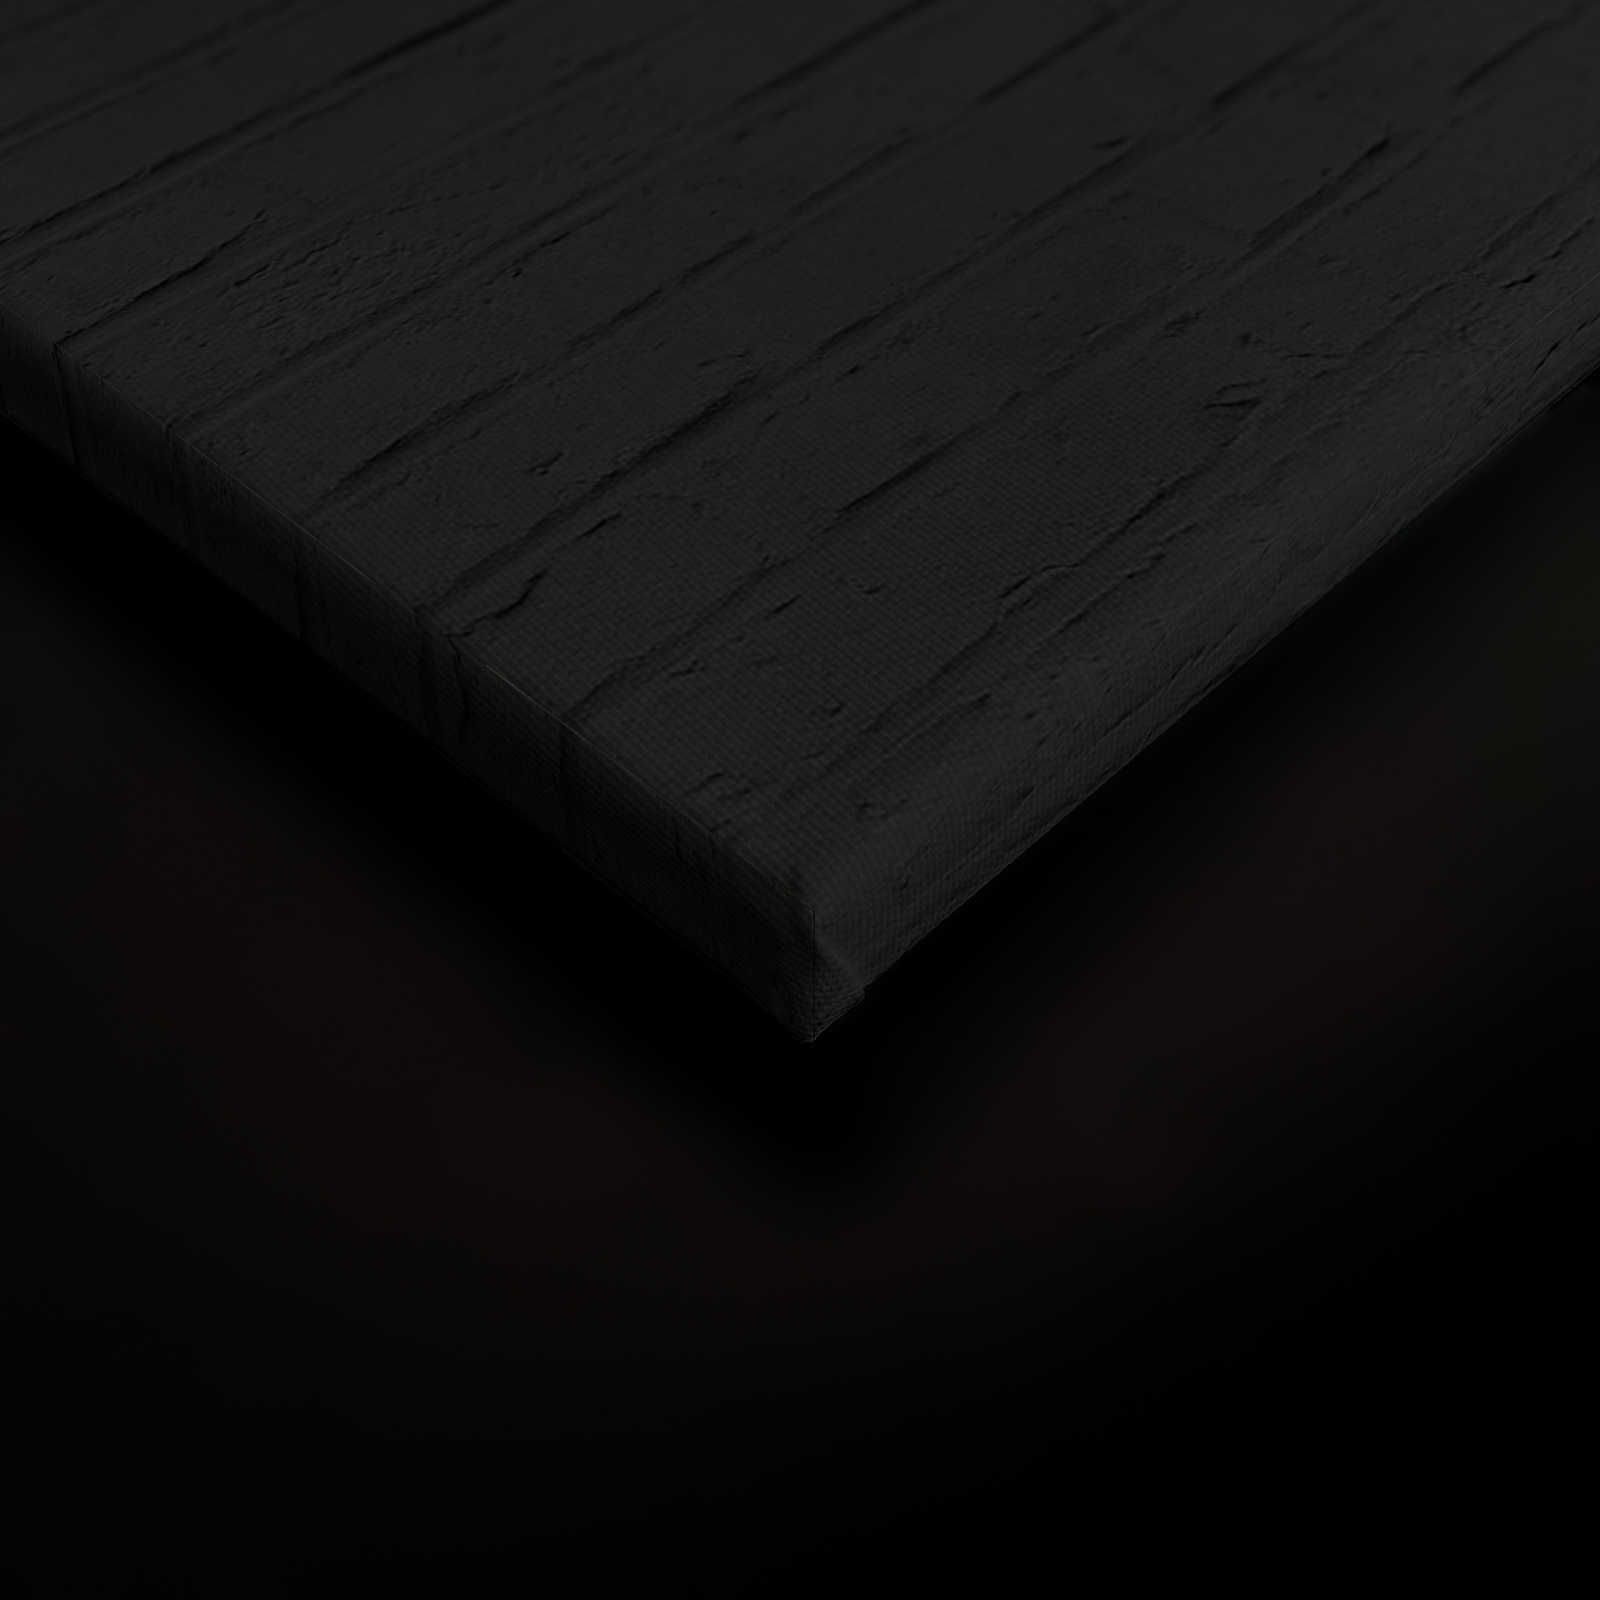             Toile noire Femme avec cocktail & maçonnerie - 0,90 m x 0,60 m
        